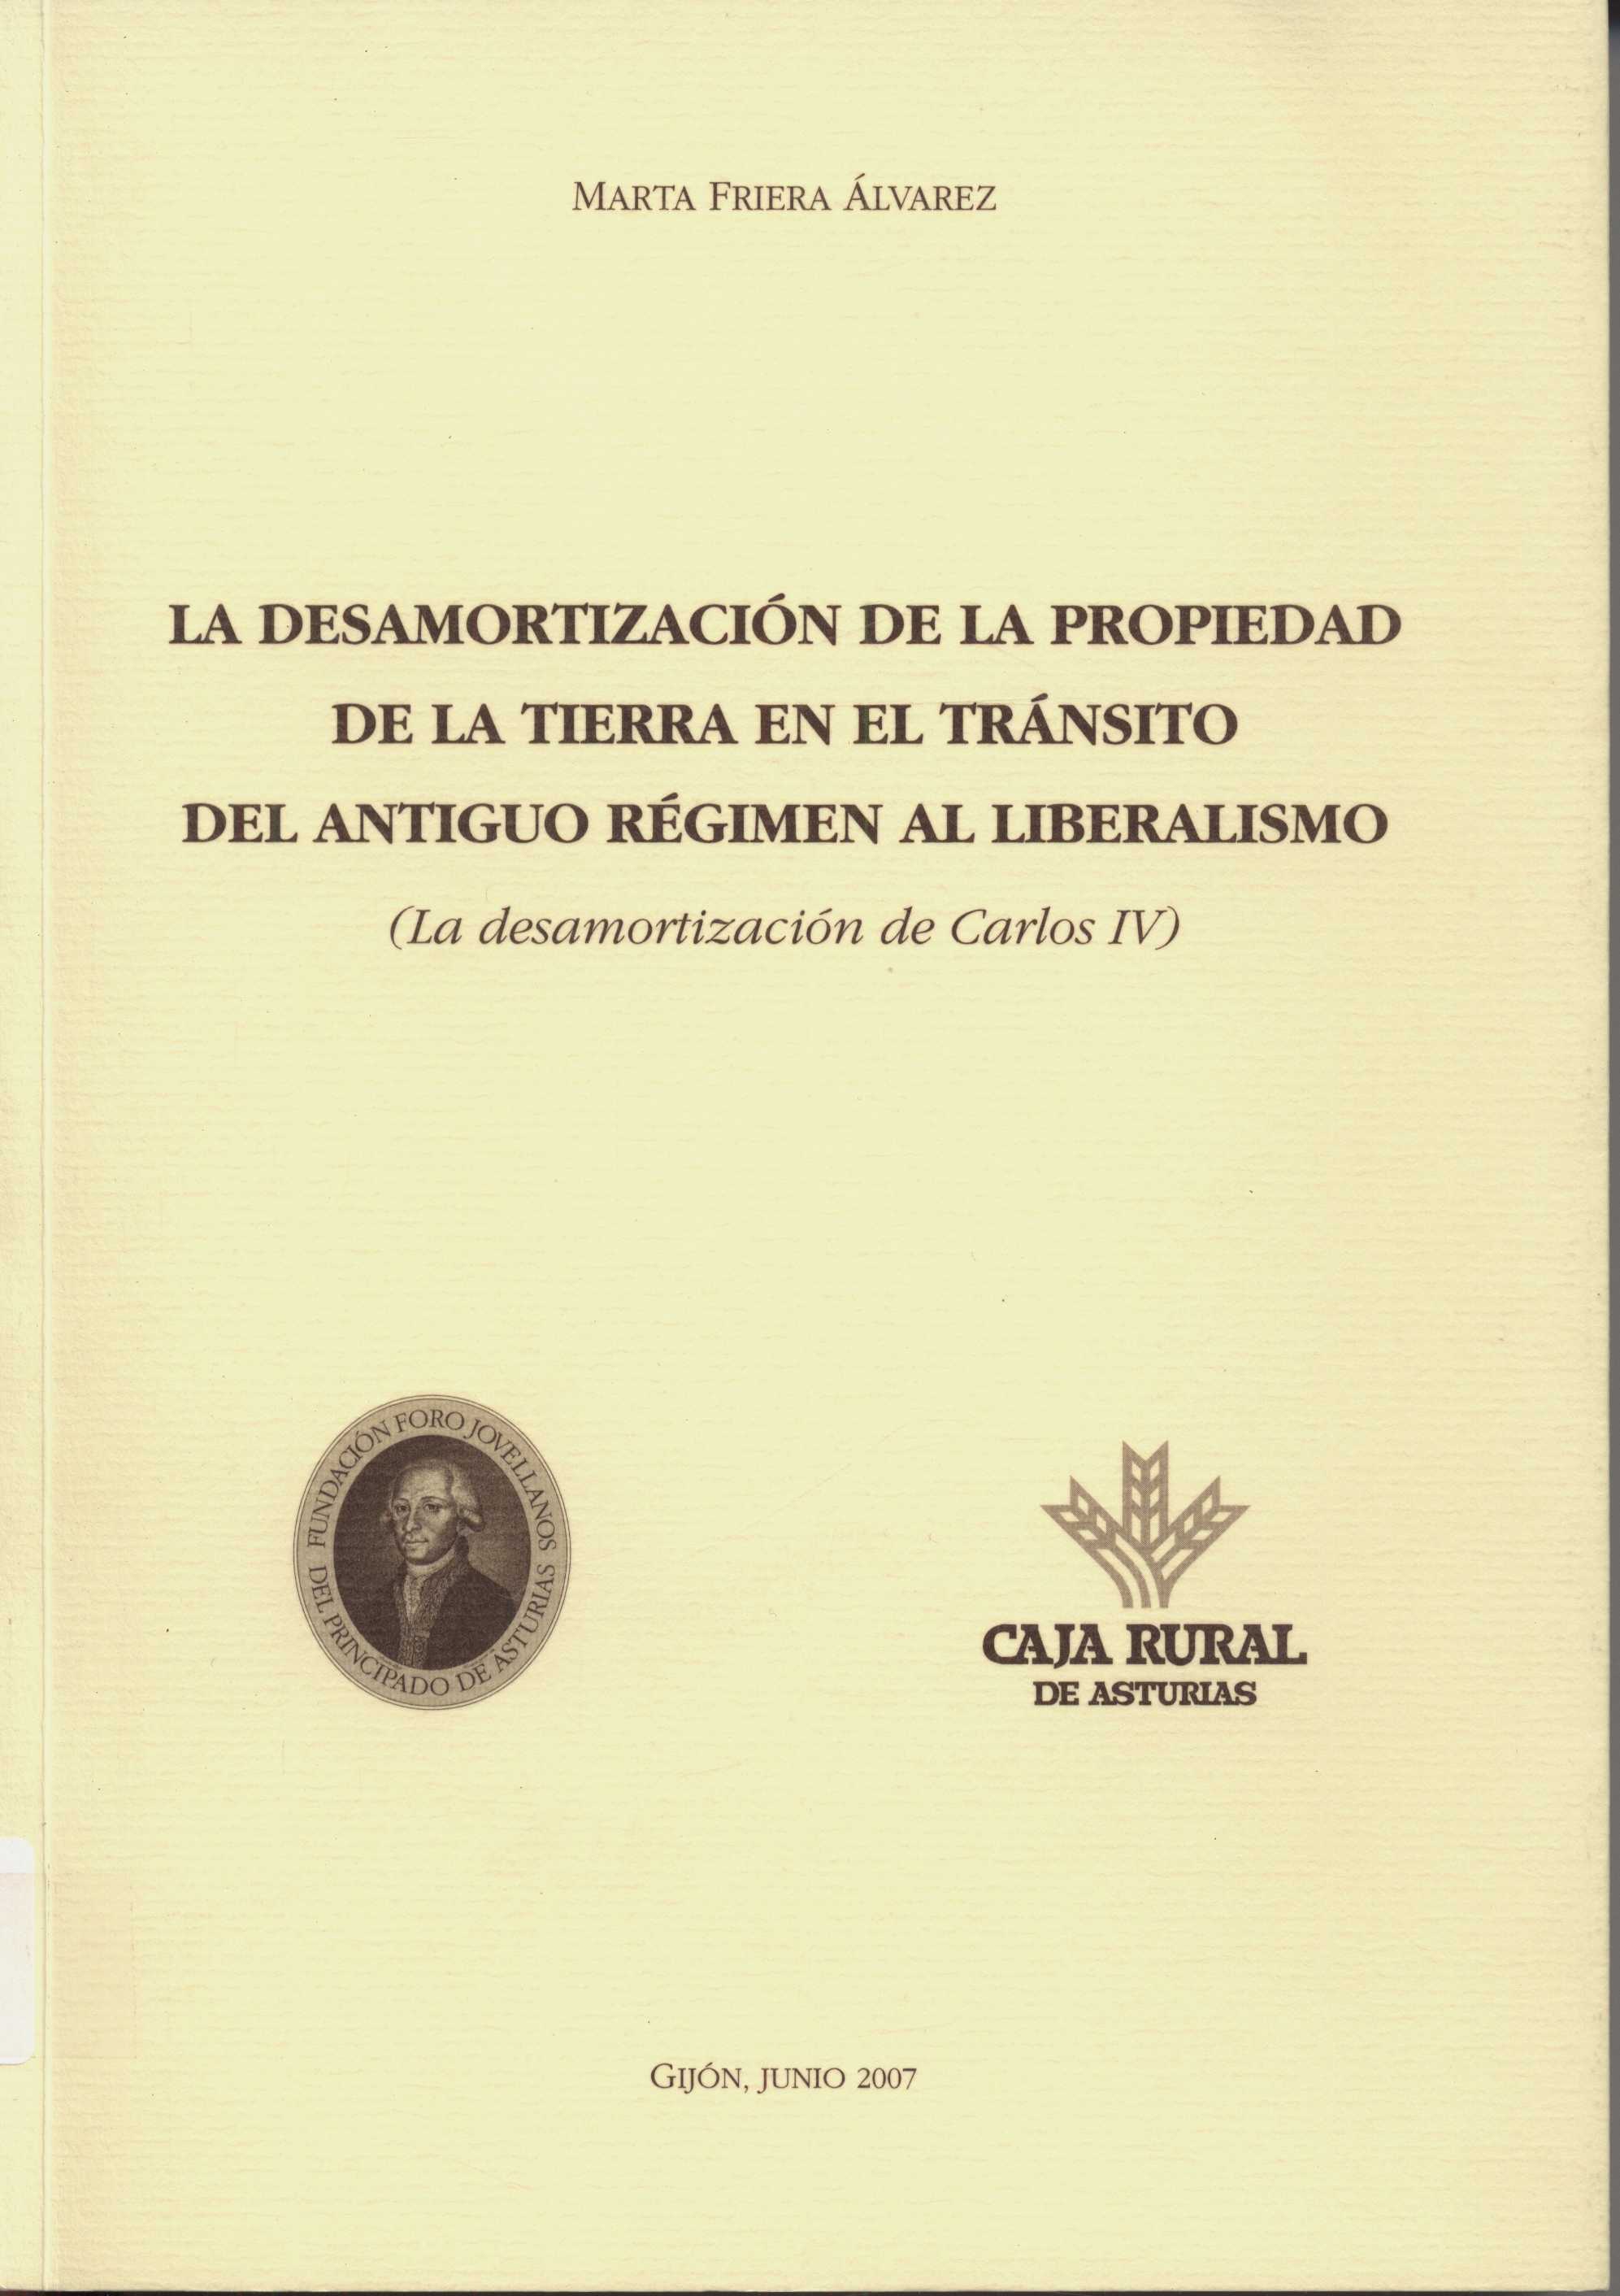 Imagen de portada del libro La desamortización de la propiedad de la tierra en el tránsito del Antiguo Régimen al liberalismo